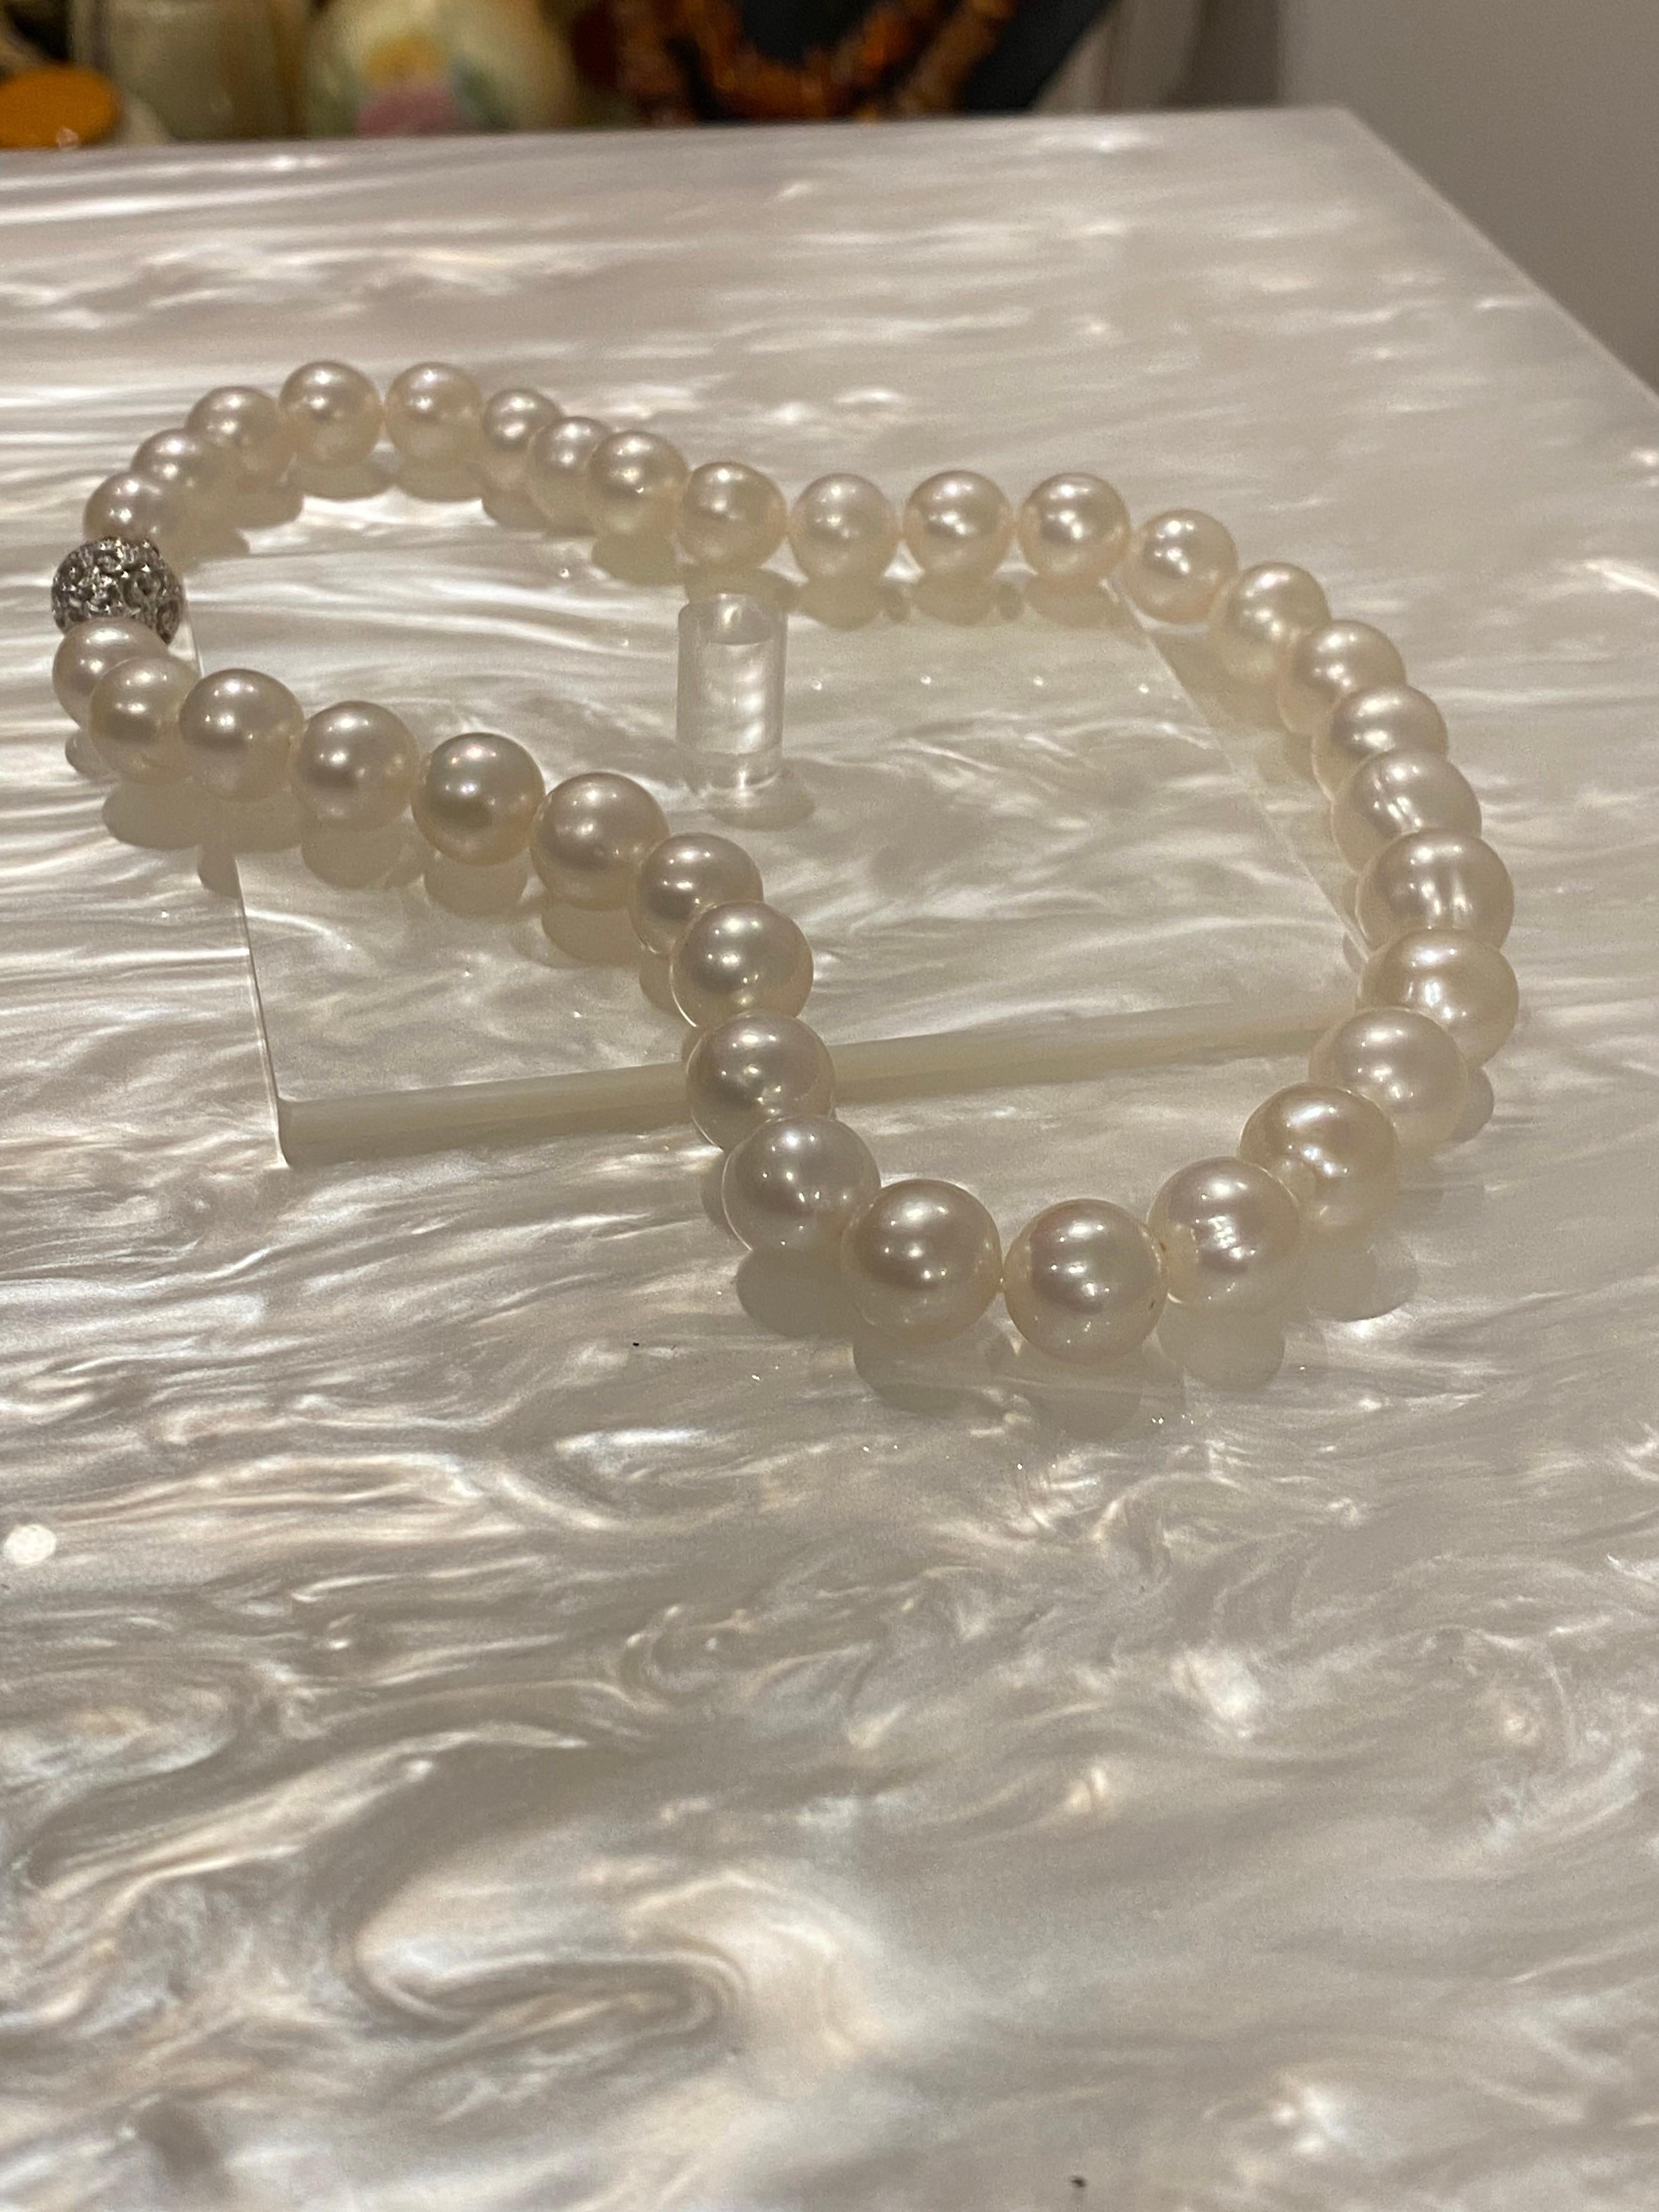 Grand collier de perles de culture de 11 mm à 14 mm. Fermoir en or et diamants. Prix de vente 4850 $ ! Excellent état - En vente à MELBOURNE, AU